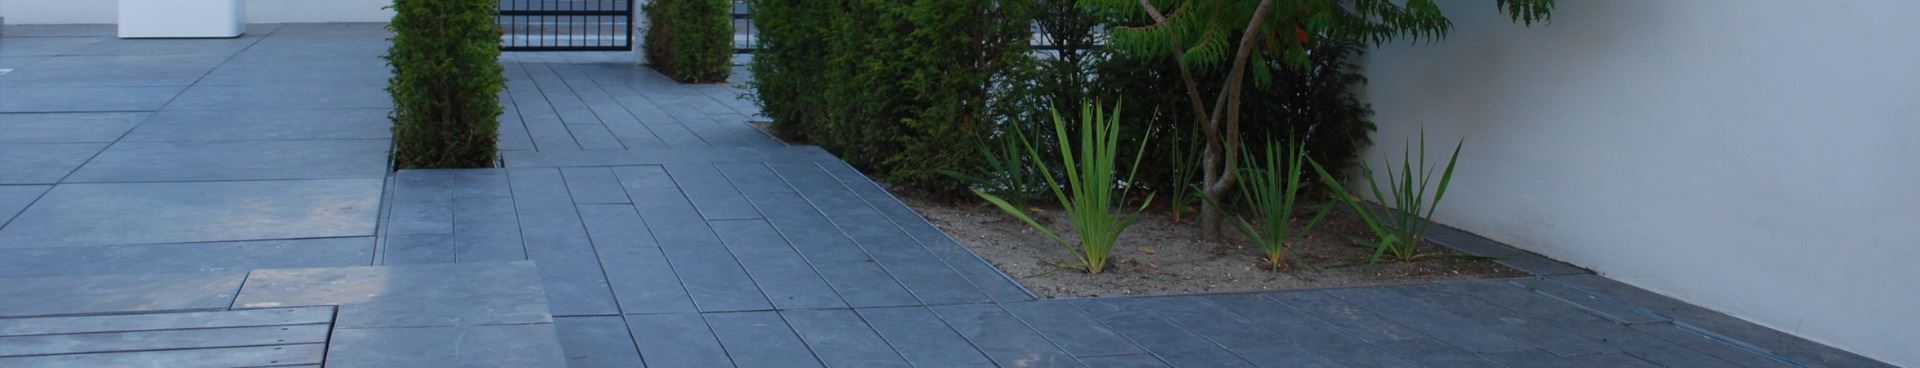 Kongsberg plank i have designet af havearkitekt Tor Haddeland